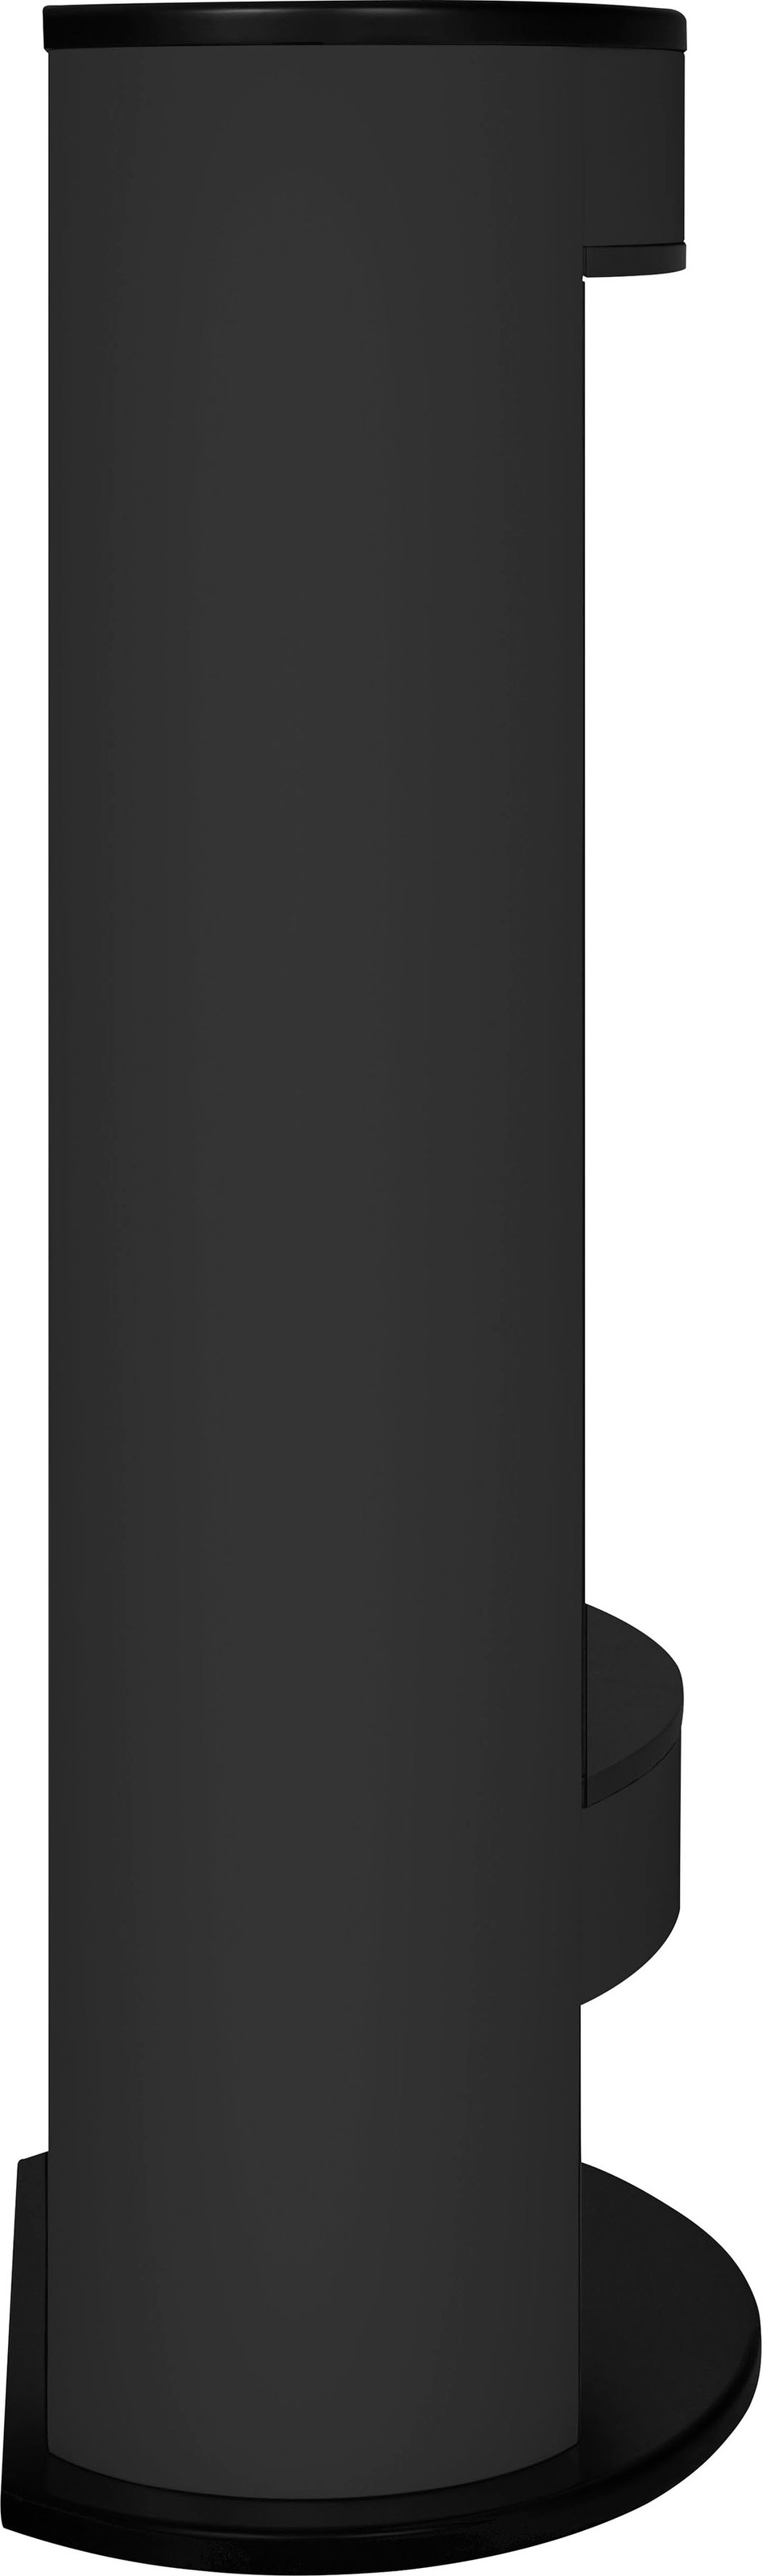 Dimplex Elektrokamin »Verdi black«, mit Heizfunktion, bis zu 2000 Watt